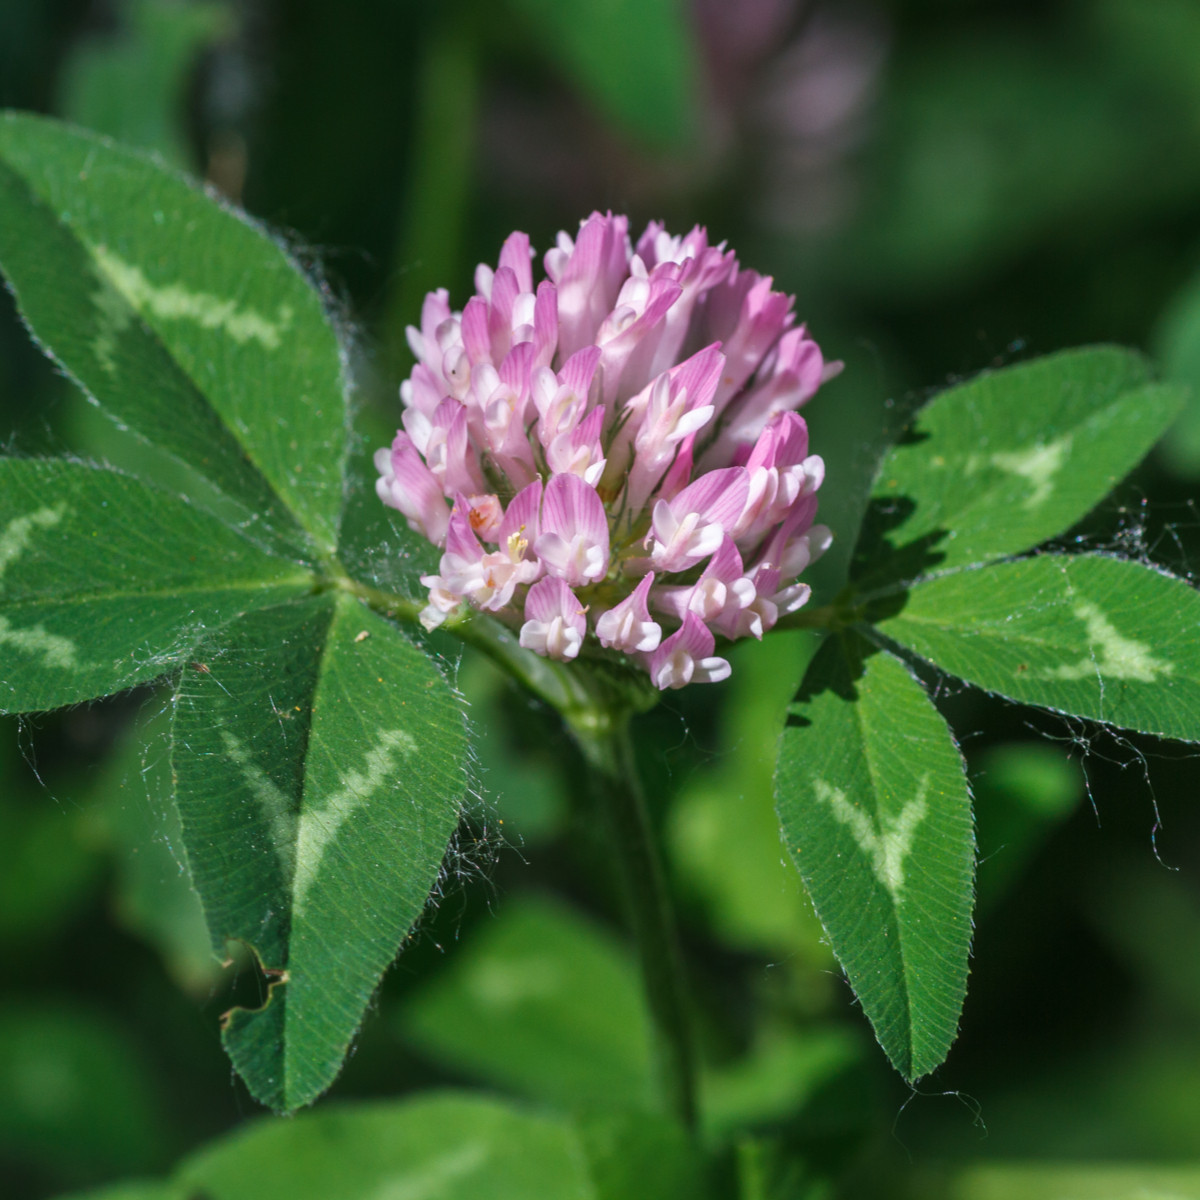 Jetel luční - Trifolium pratense - květ - 30 g